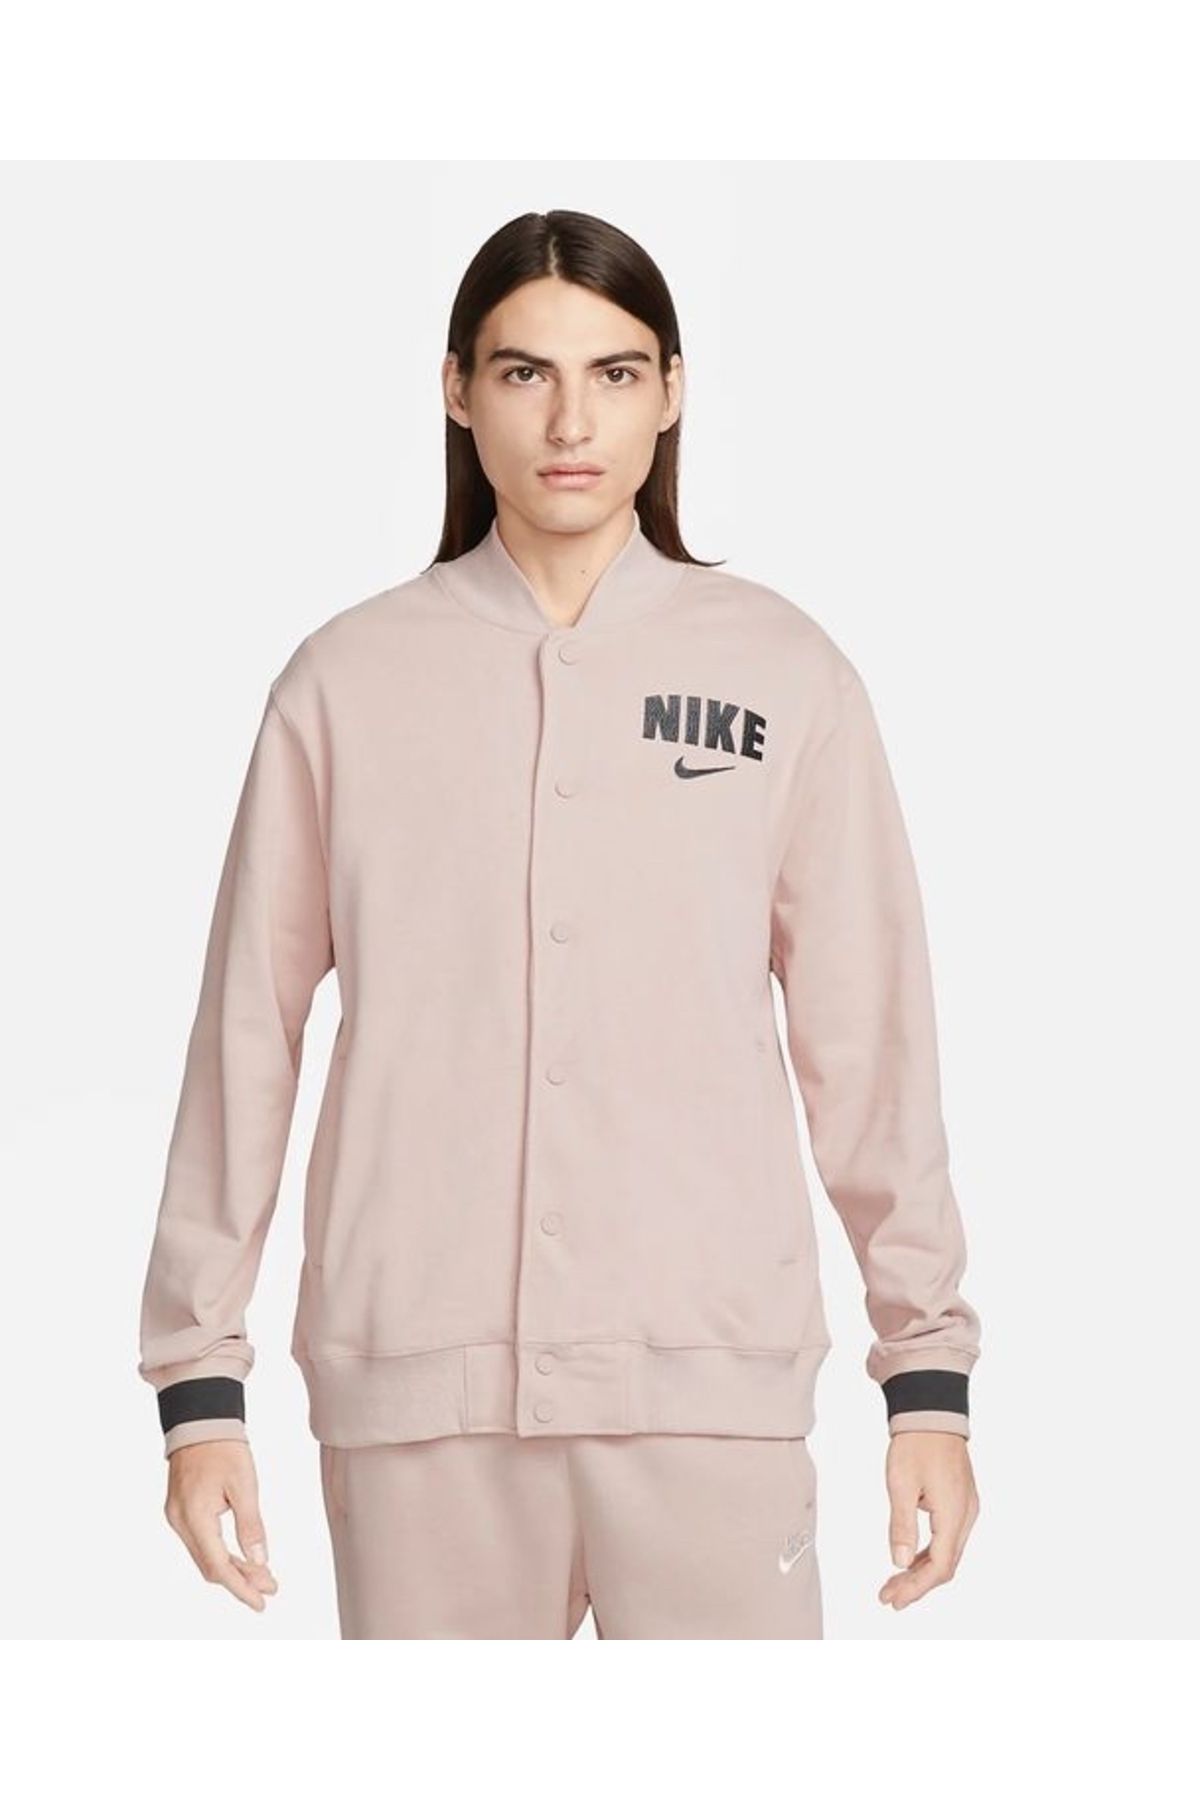 Nike Sportswear Retro Fleece Erkek Varsity Ceket